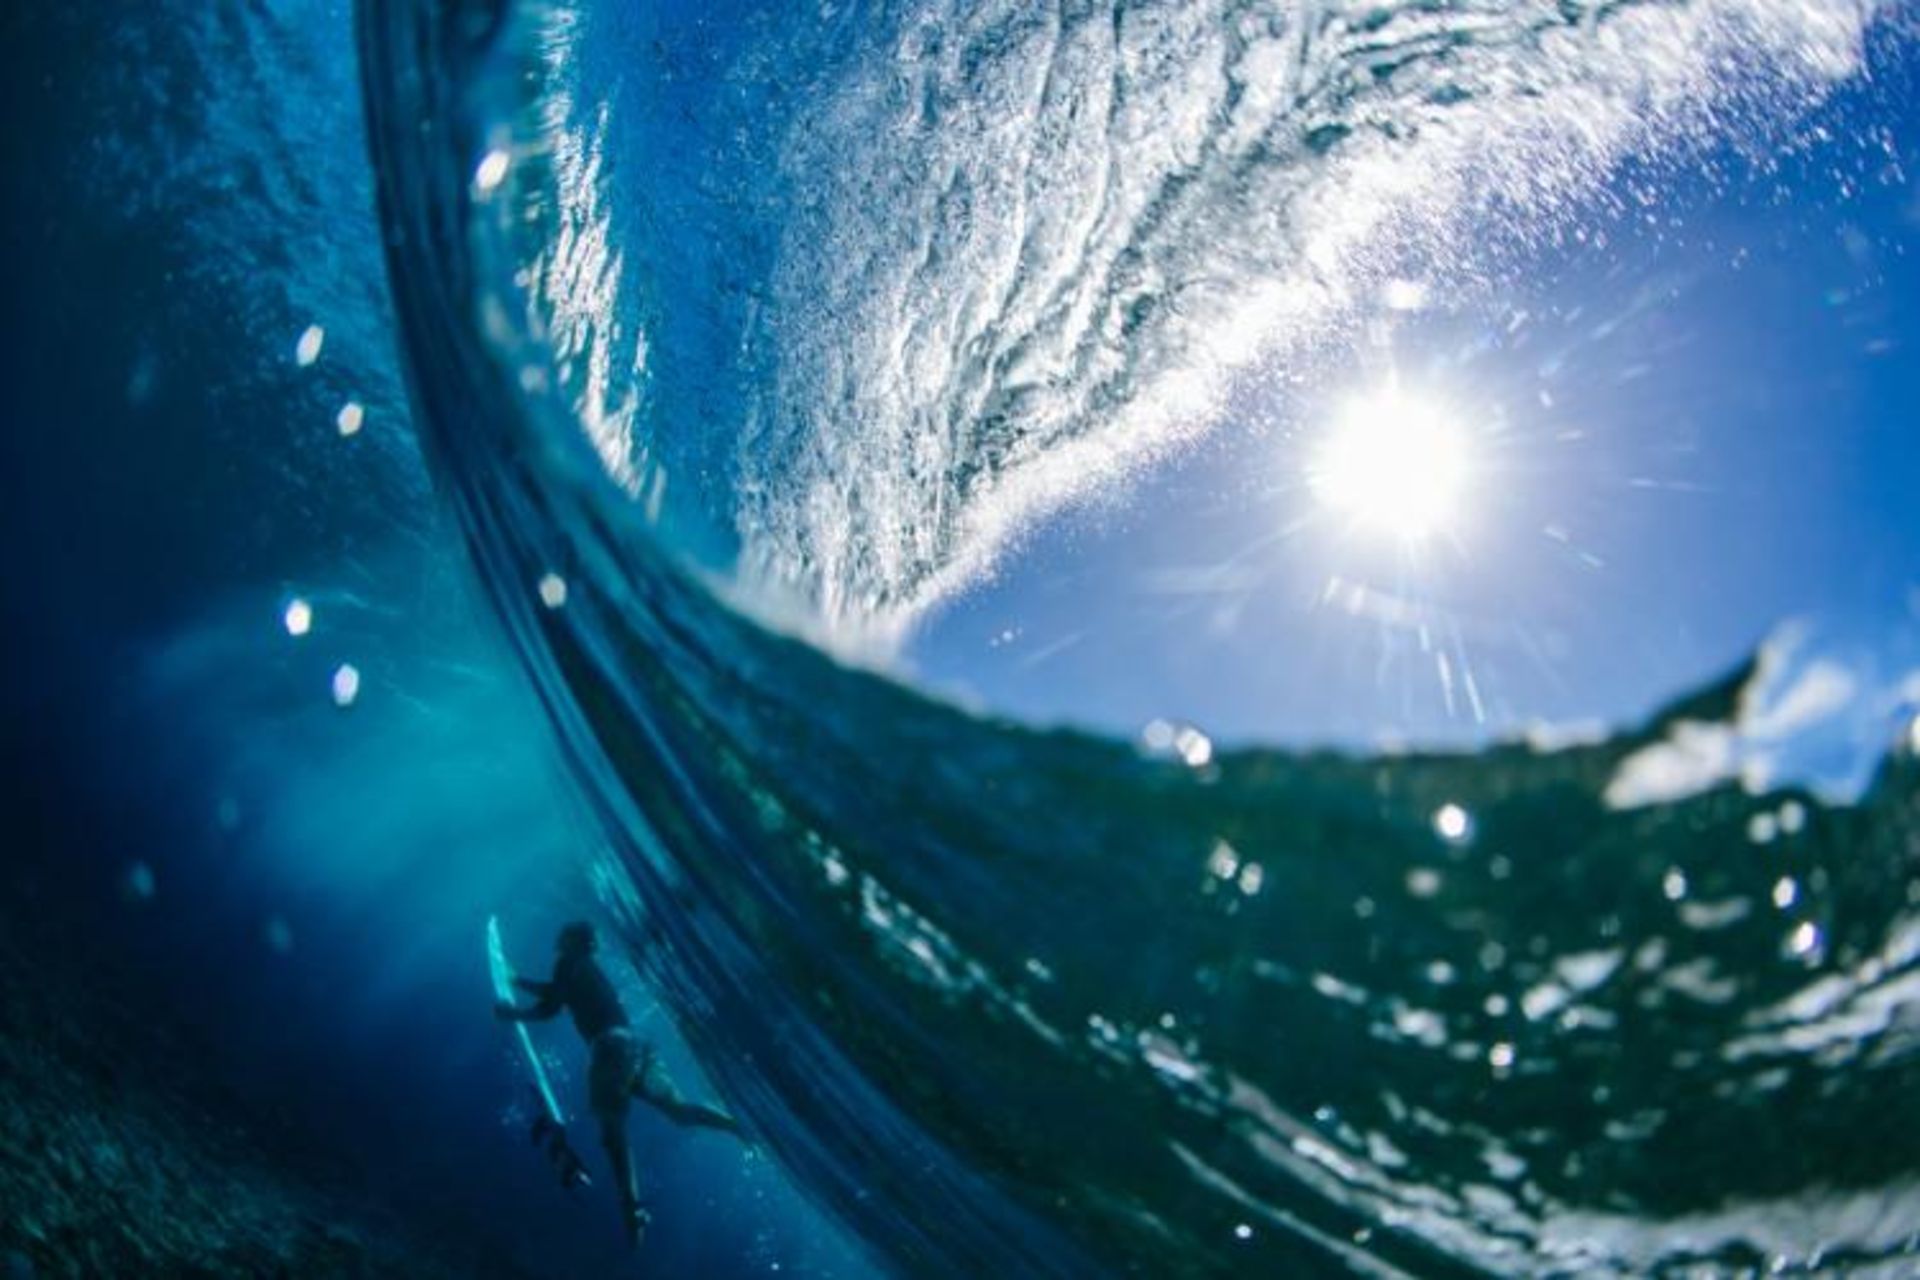 مرجع متخصصين ايران عكس فيناليست مت دانبار در مسابقه عكاسي 2020 Surf Photo Nikon Australia